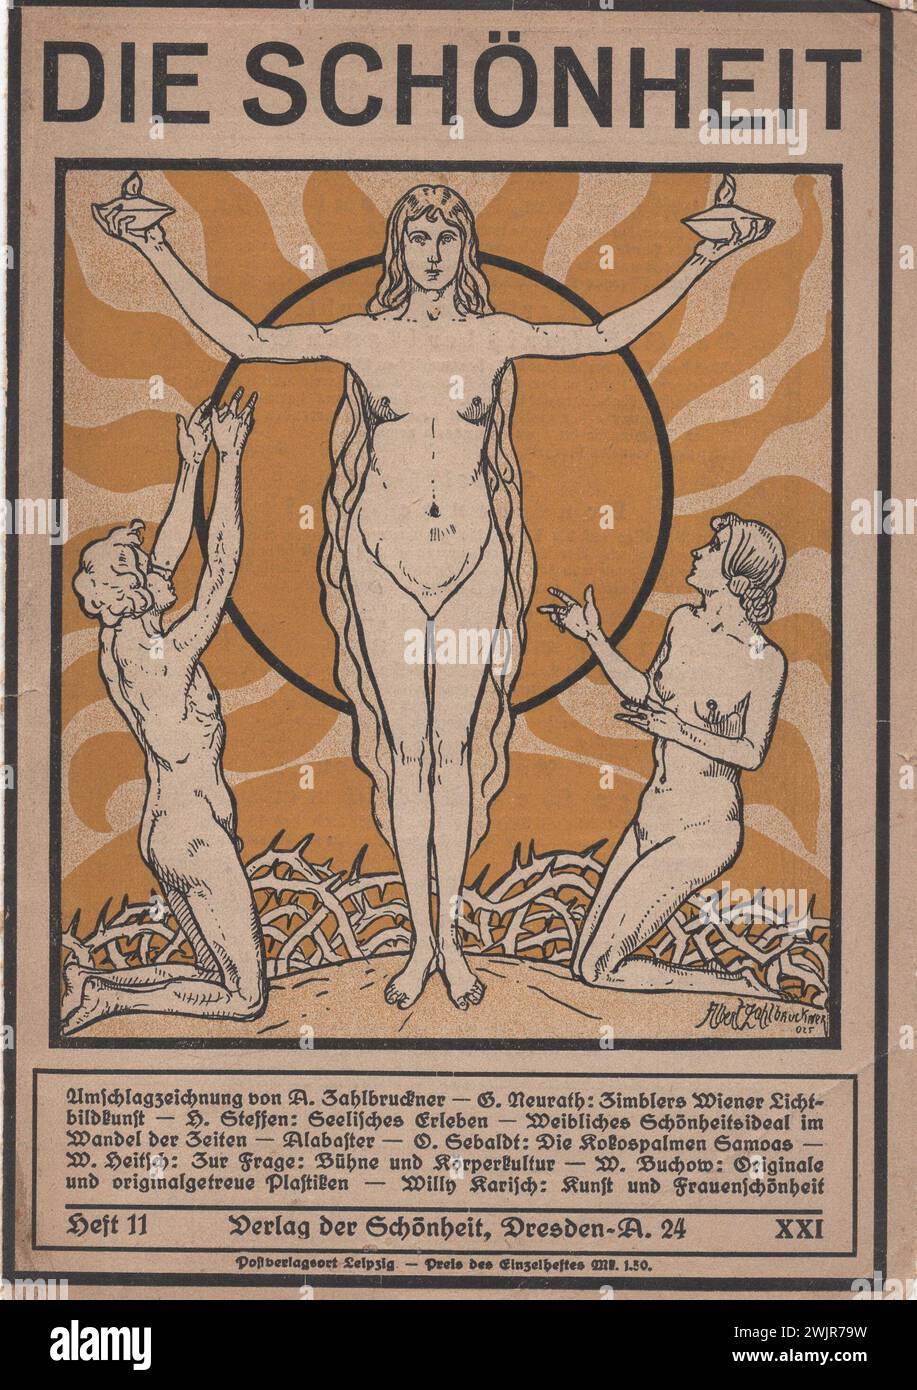 Die Schönheit, Verlag der Schönheit, Dresda anni '1910 - '1920, artista tedesco magazin / deutsches kunstmagazin Foto Stock